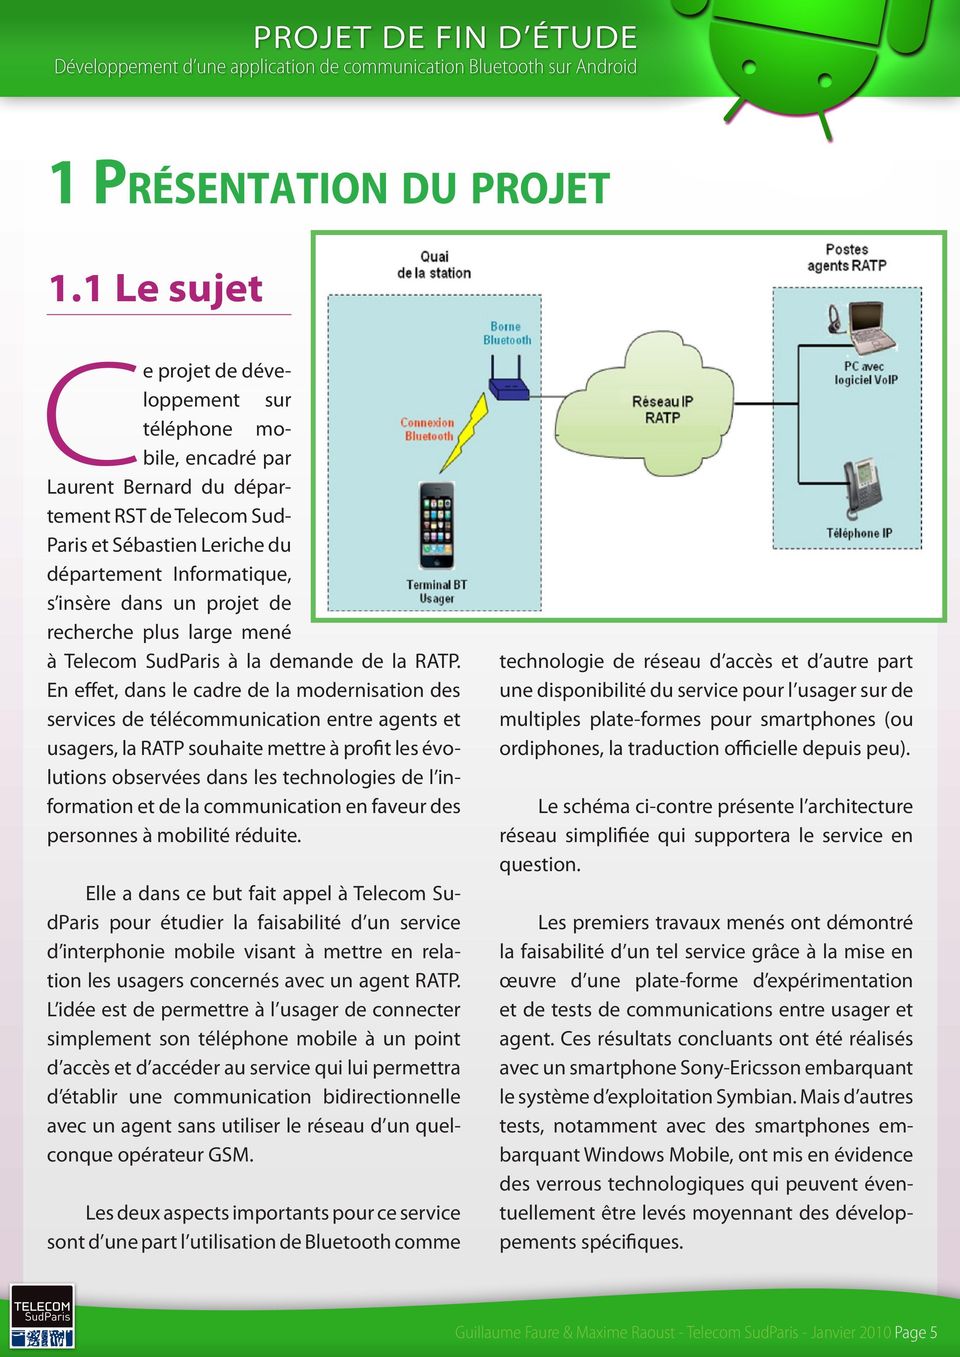 projet de recherche plus large mené à Telecom SudParis à la demande de la RATP.